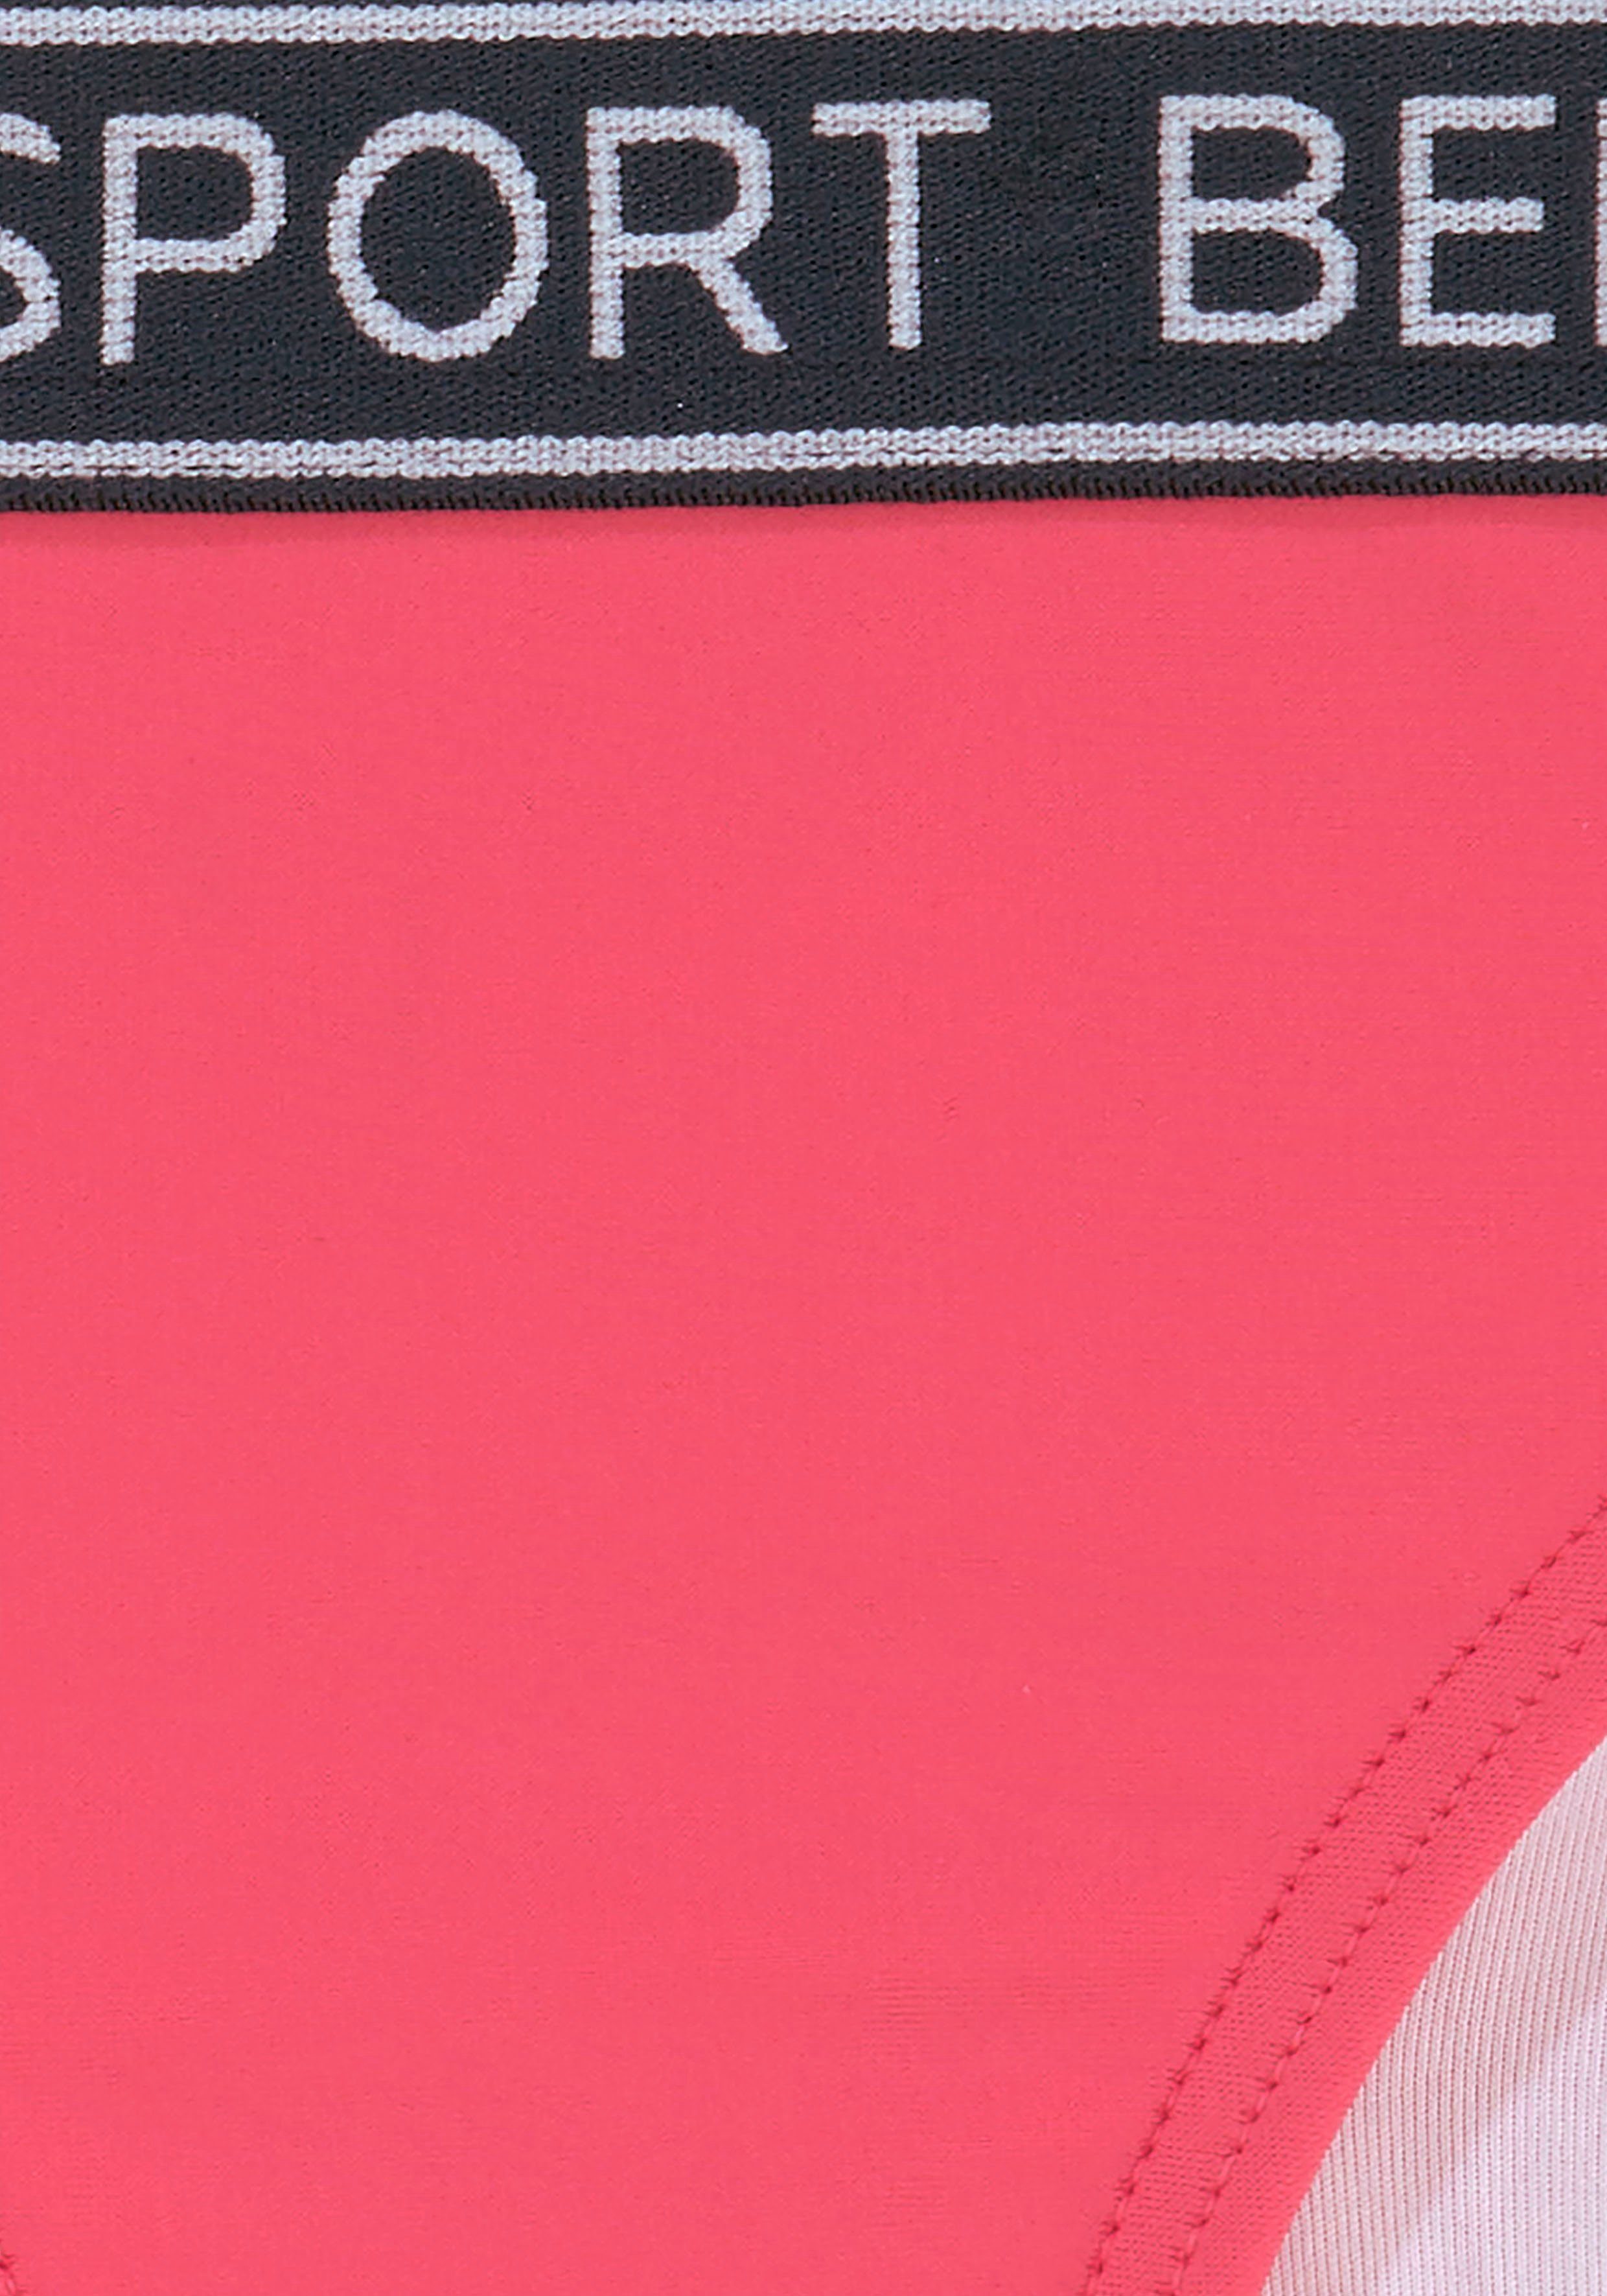 sportlichem Design Bench. pink Yva Triangel-Bikini und Farben Kids in